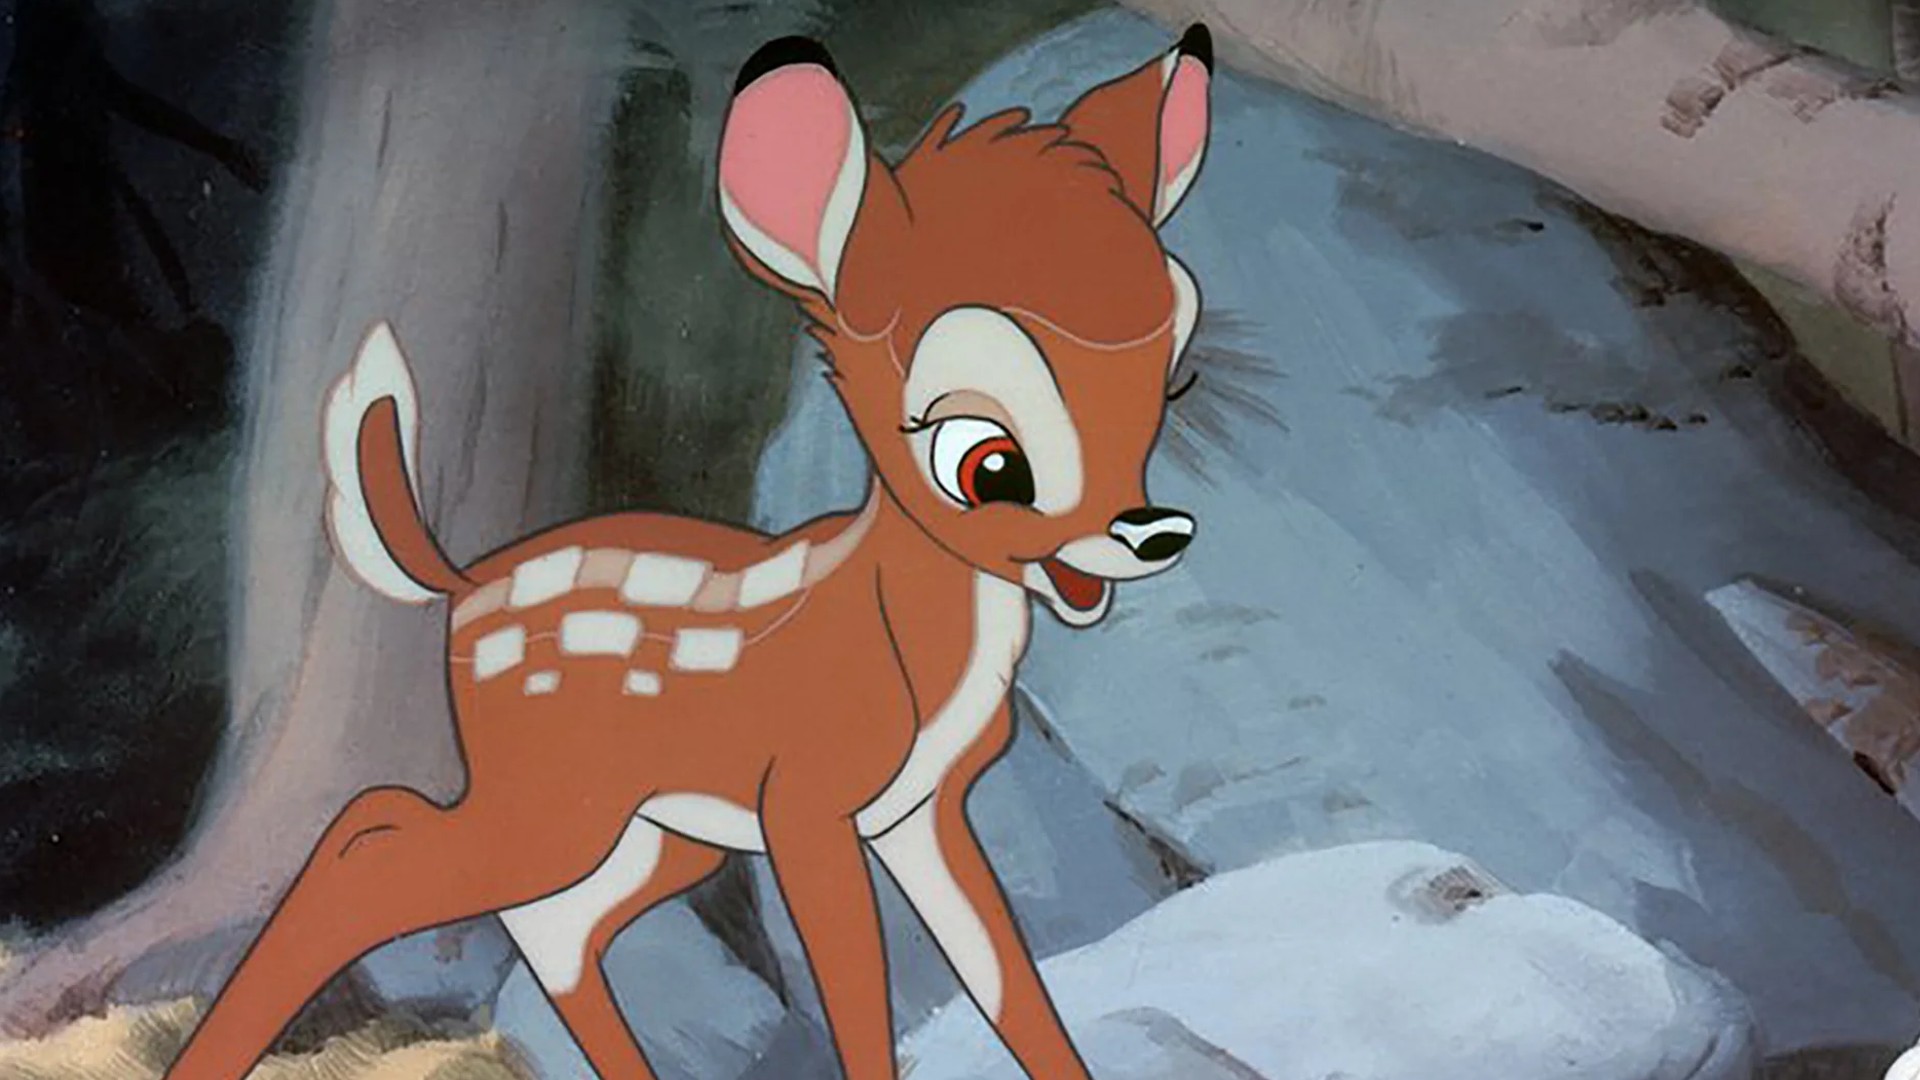 Live-action de Bambi perde diretora e pode ser cancelado